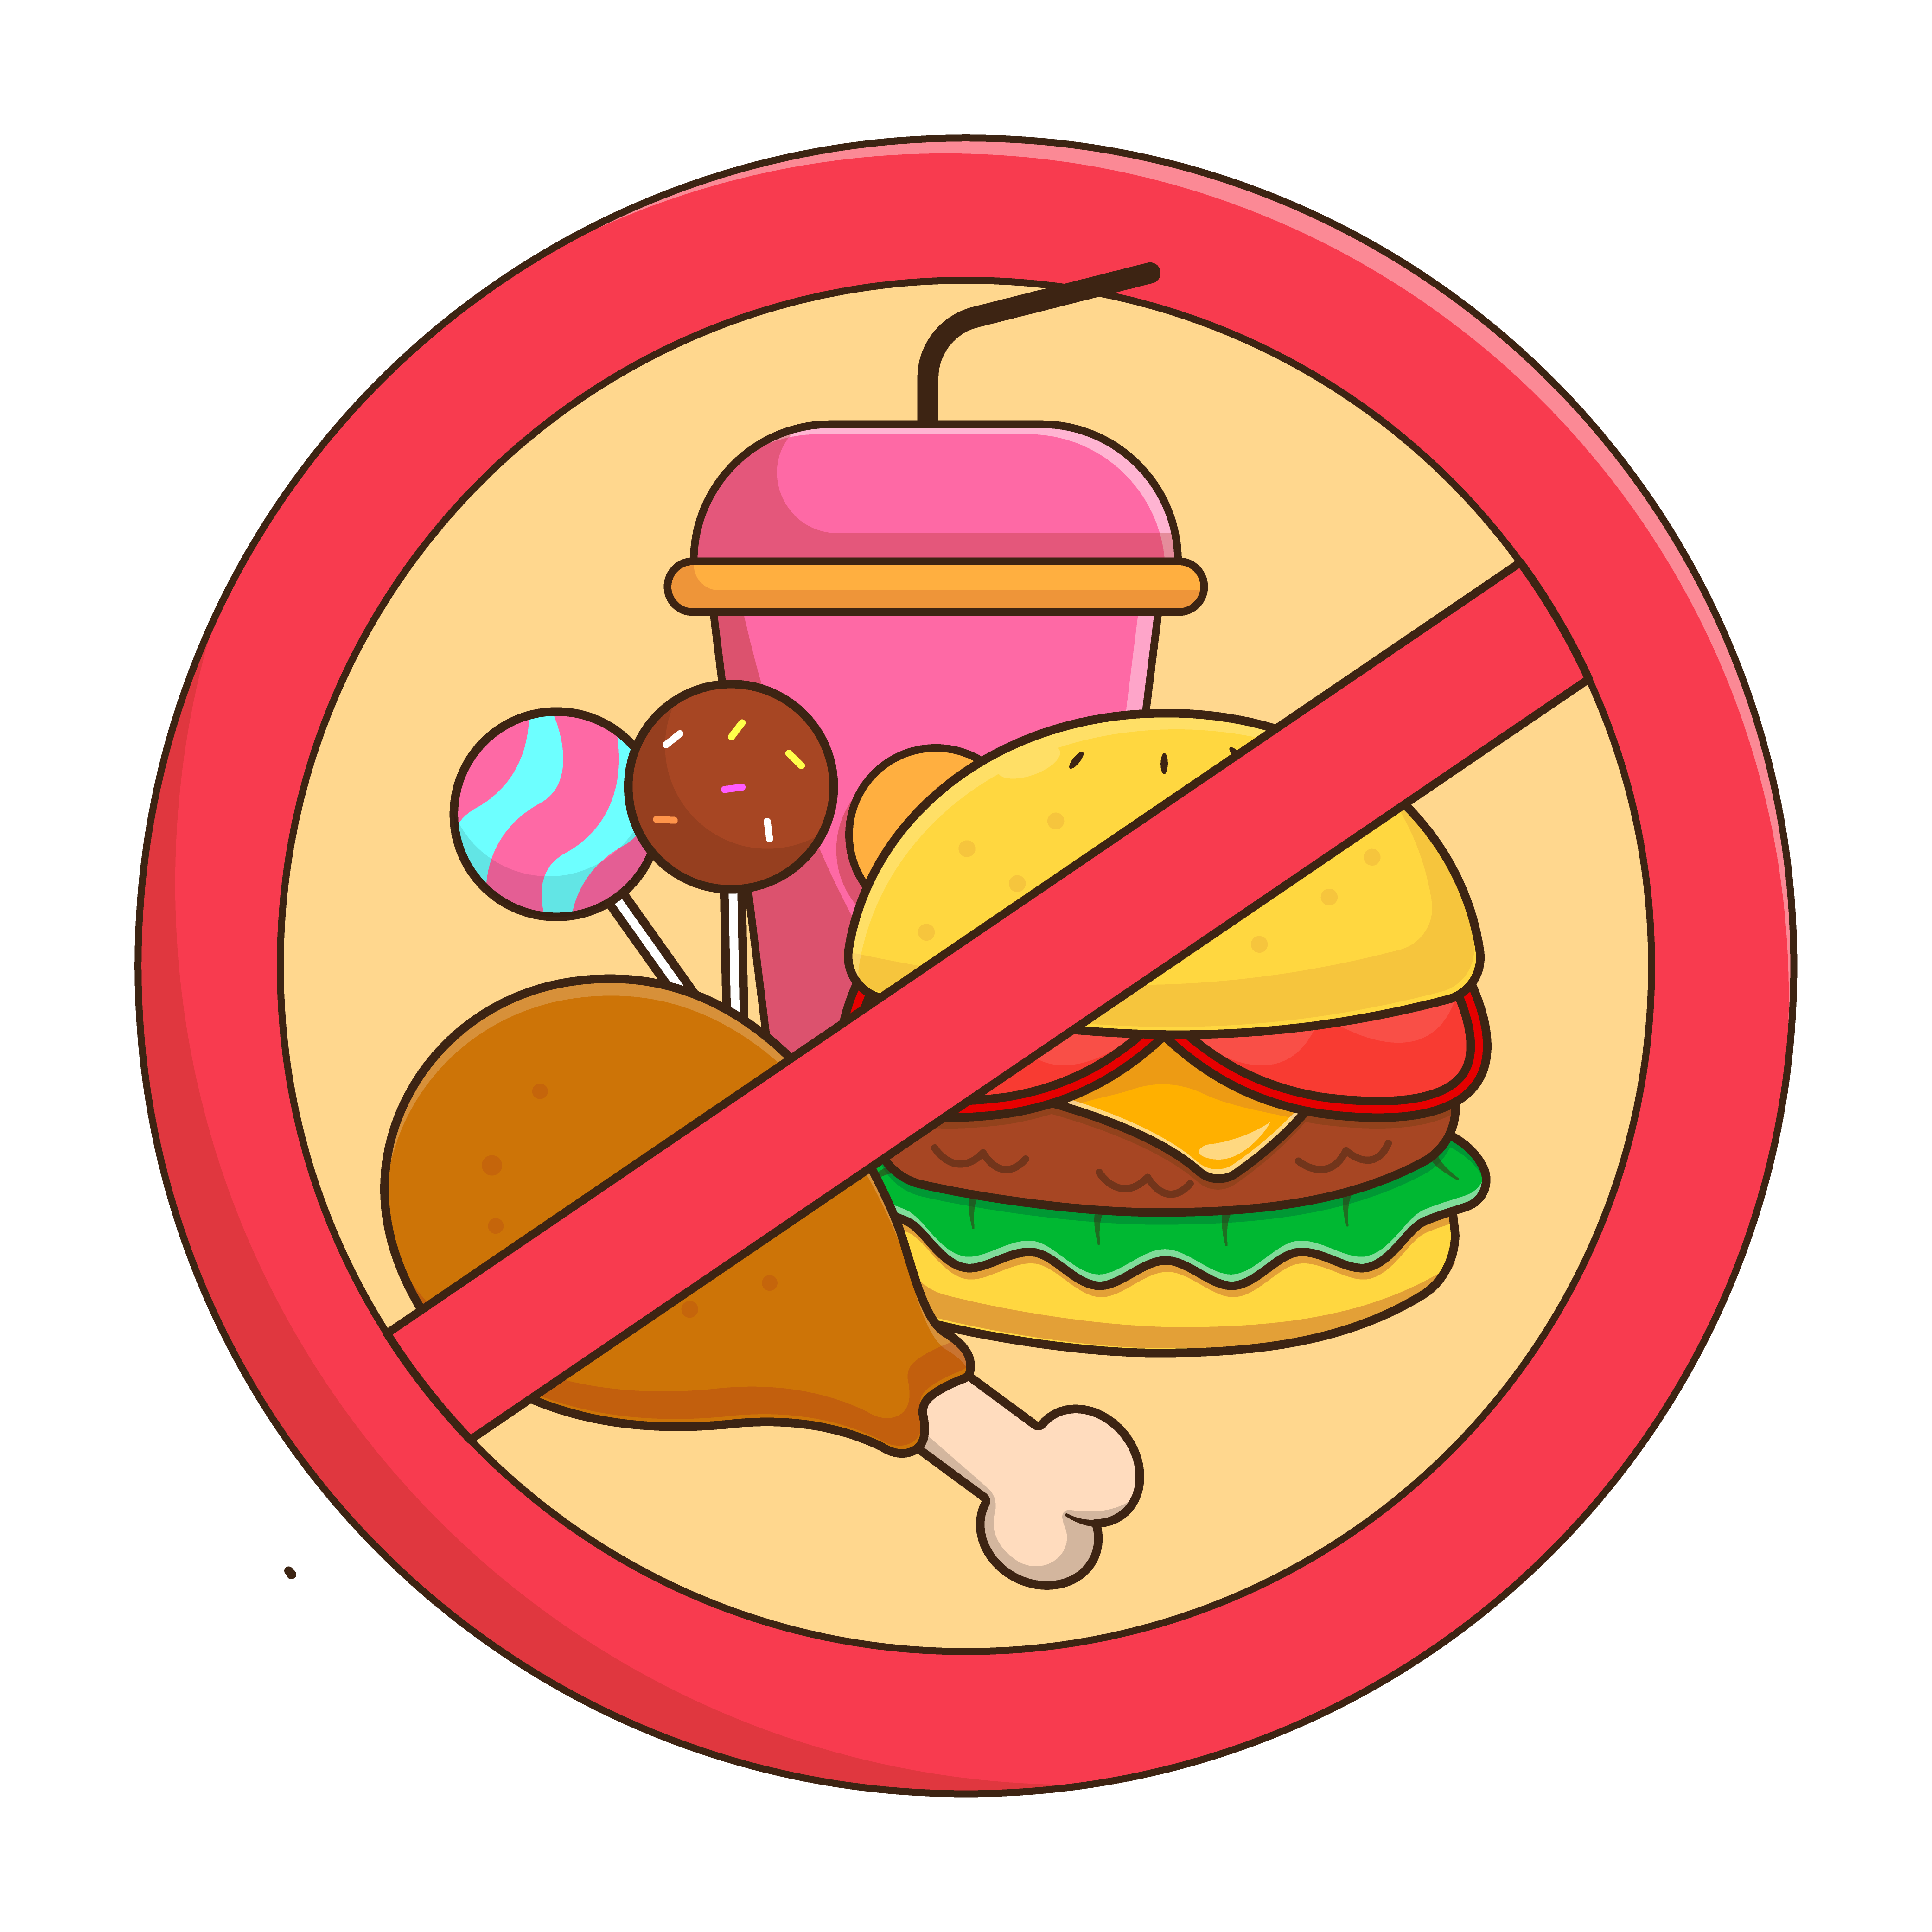 Pictogramm: Der Verzehr von mitgebrachten Speisen ist nicht gestattet!